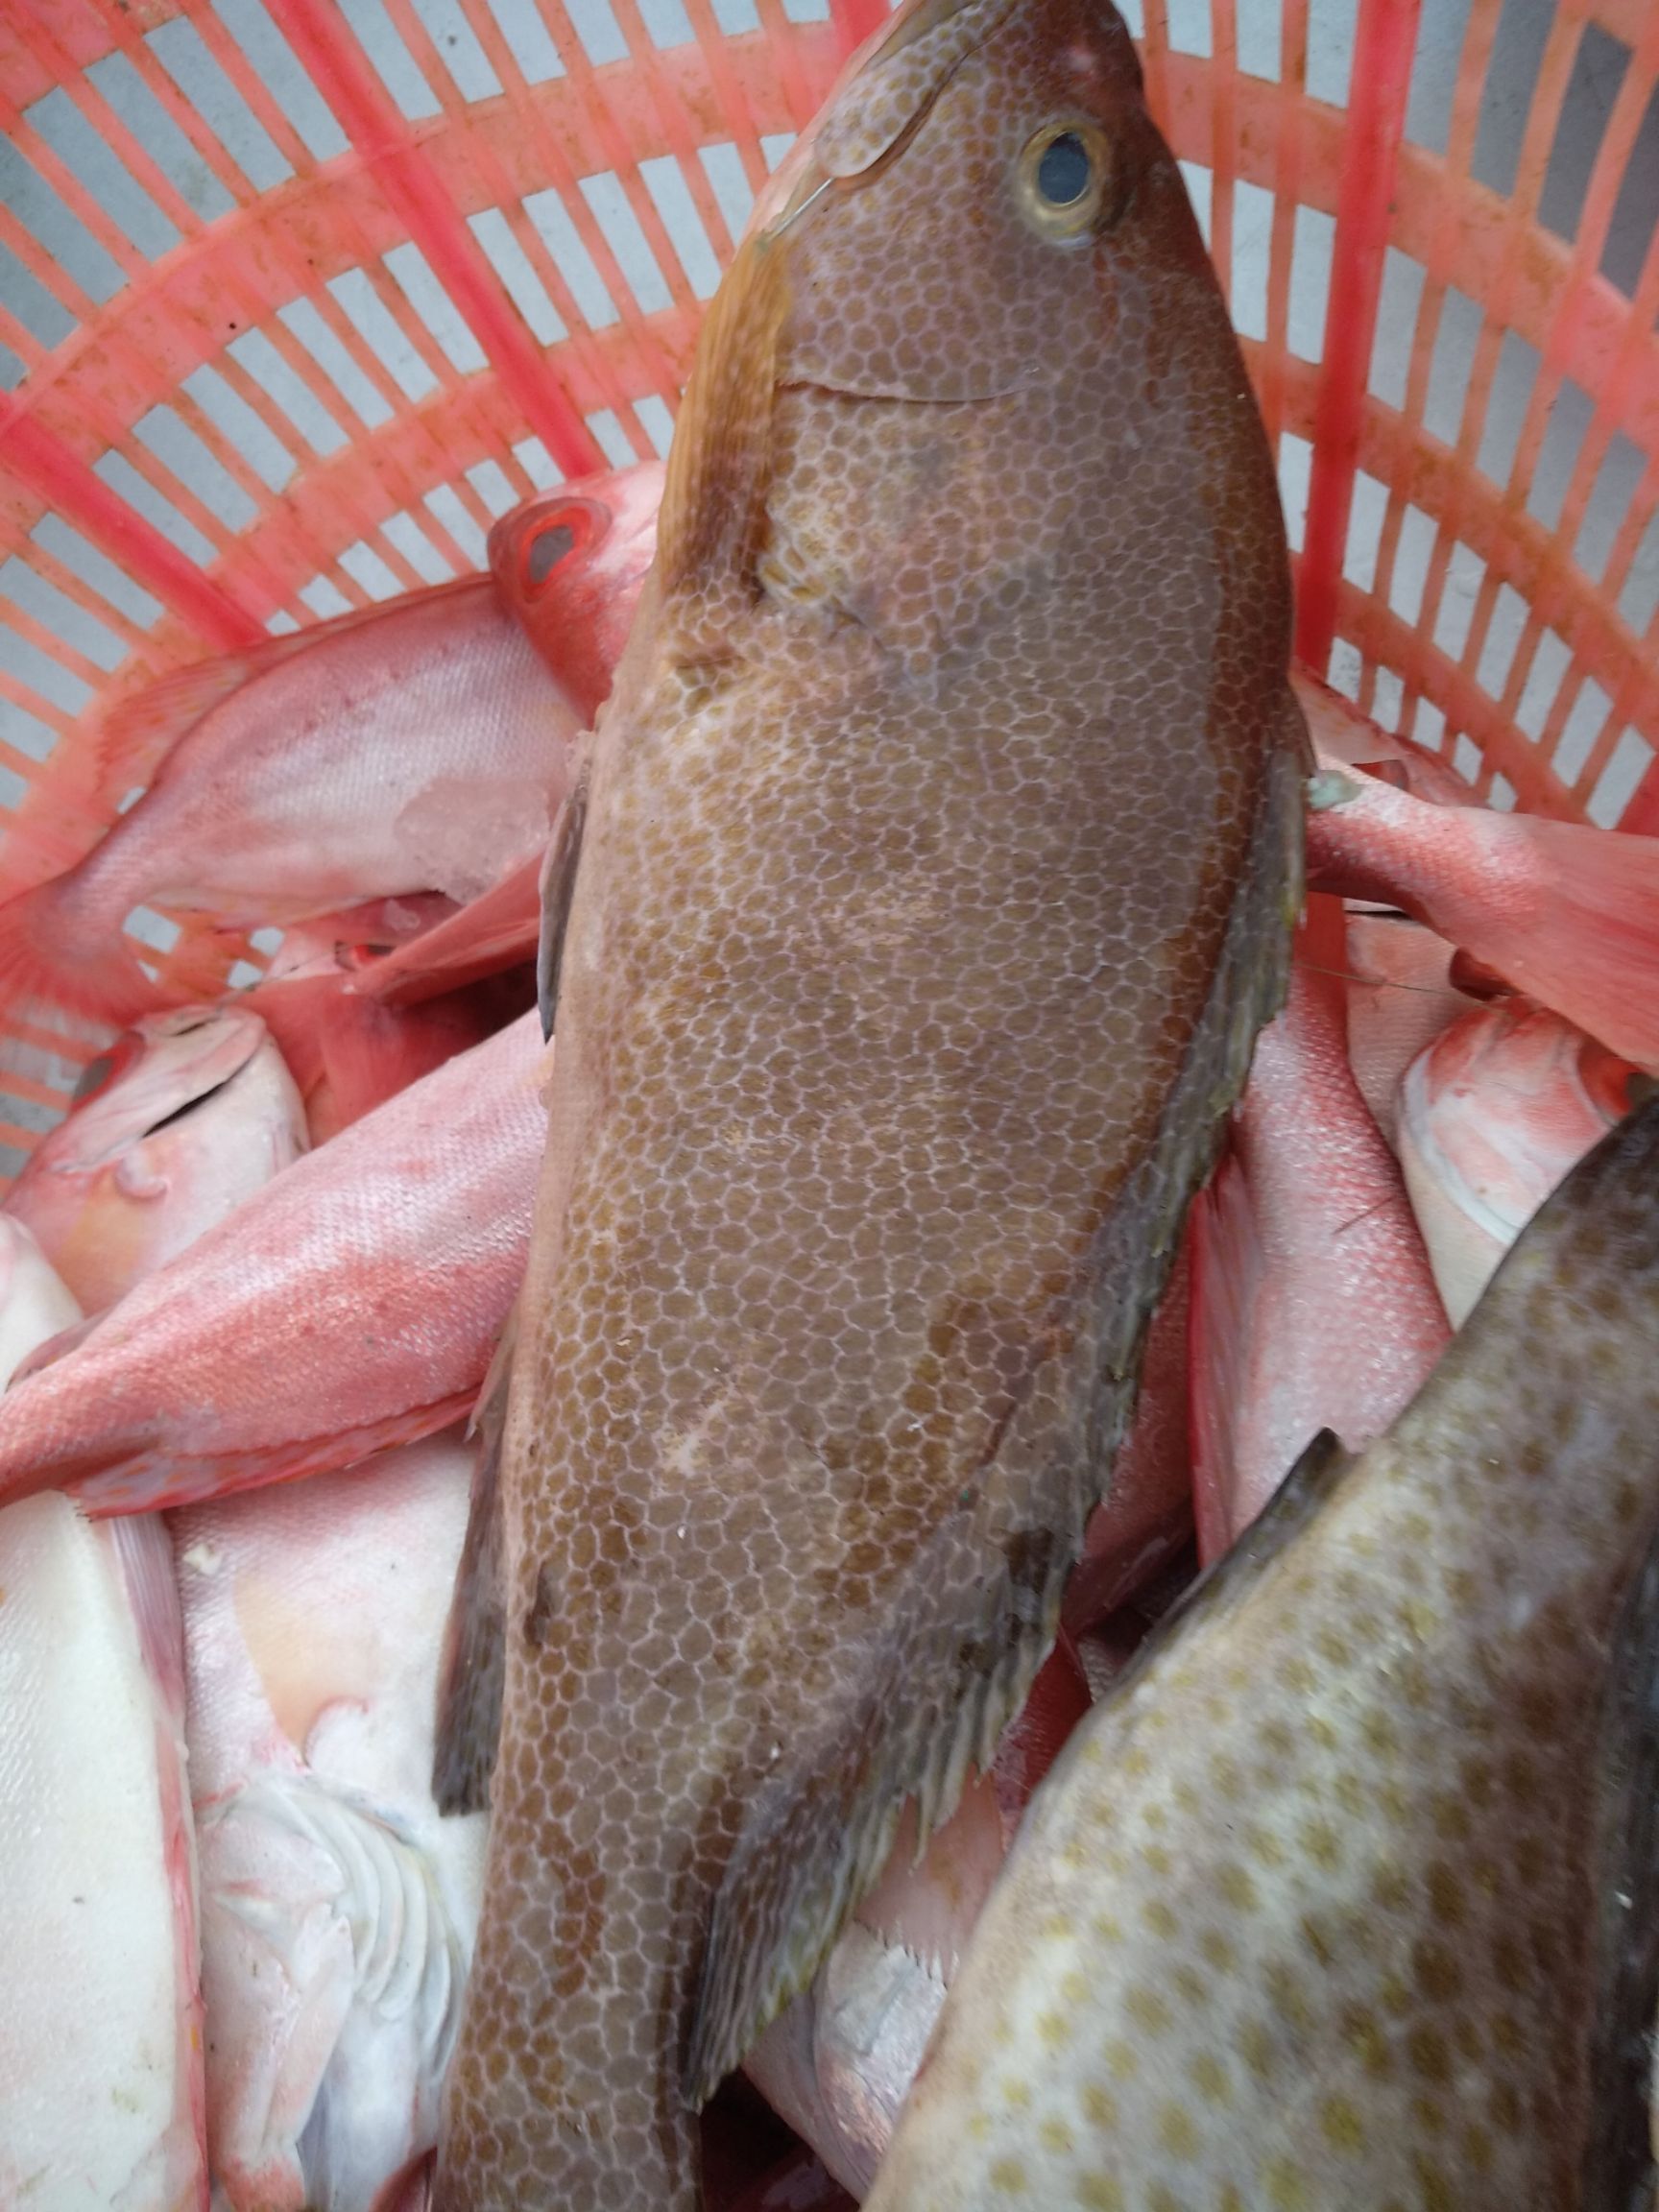 [赤点石斑批发] 石斑鱼价格35元/斤 - 惠农网